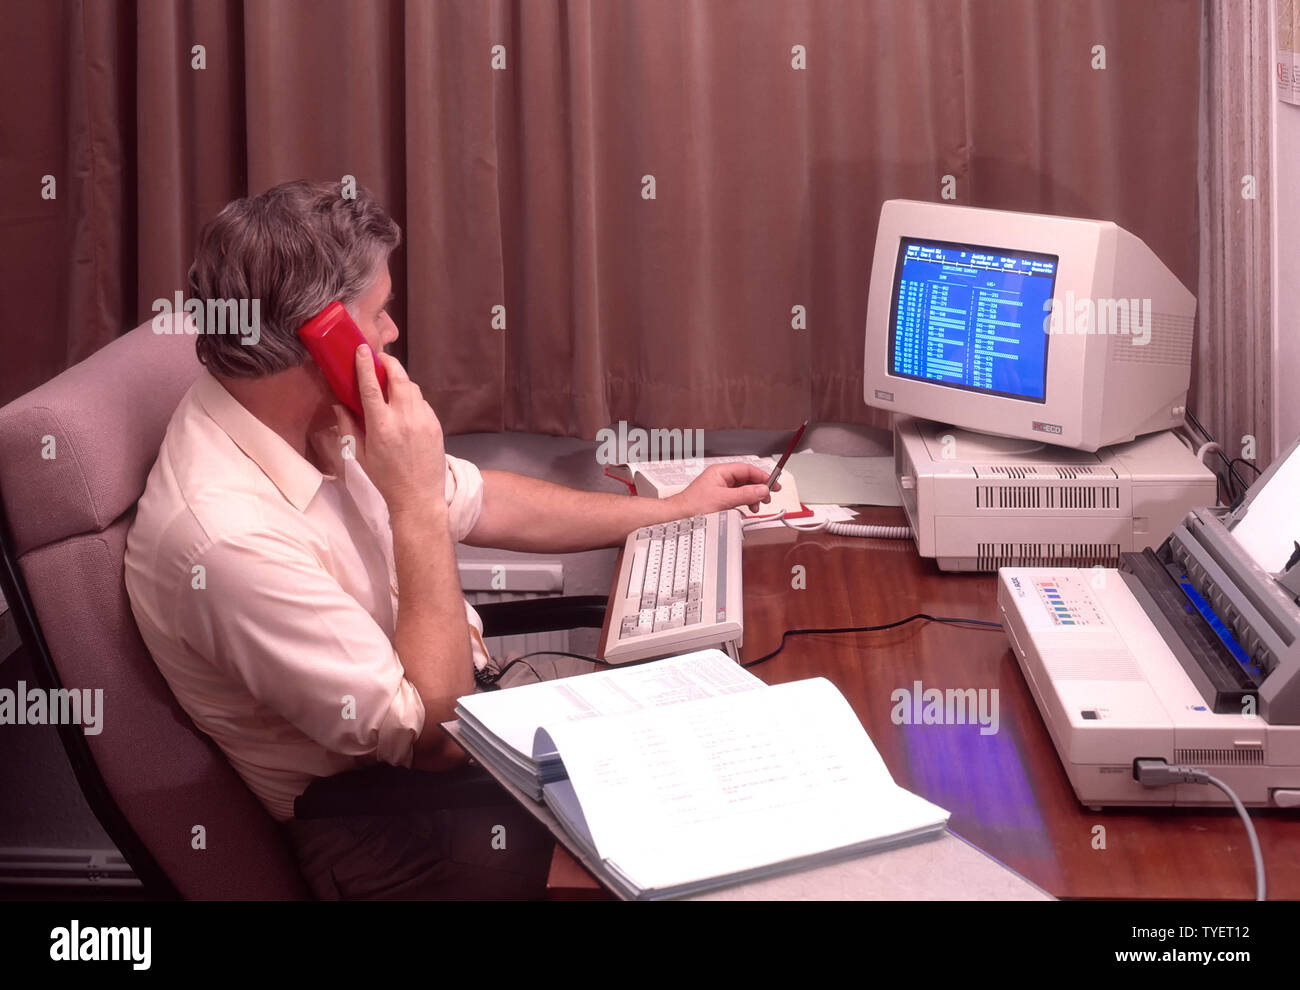 Storico 1988 archivio immagine lavoratore autonomo maschile ufficio uomo seduto alla scrivania lavoro in ritardo da casa tende disegnate chiuso utilizzando telefono fisso rosso Amstrad scrivania superiore computer schermo & stampante archivio 1980s il modo in cui eravamo Inghilterra UK nel 80s Foto Stock